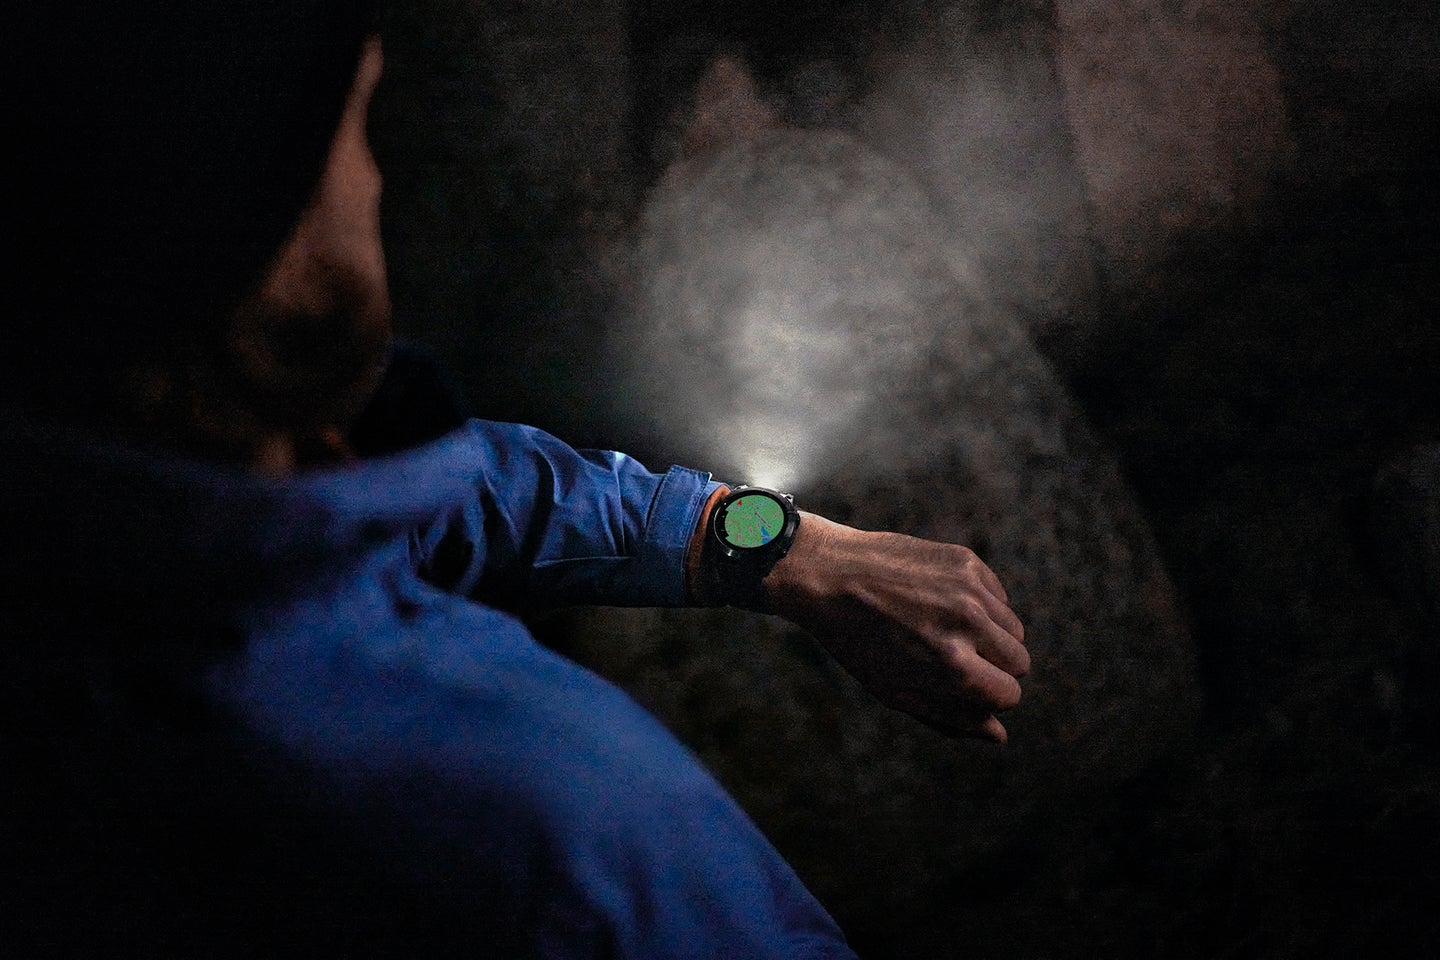 Garmin fēnix 7 Pro on a wrist with the flashlight illuminated